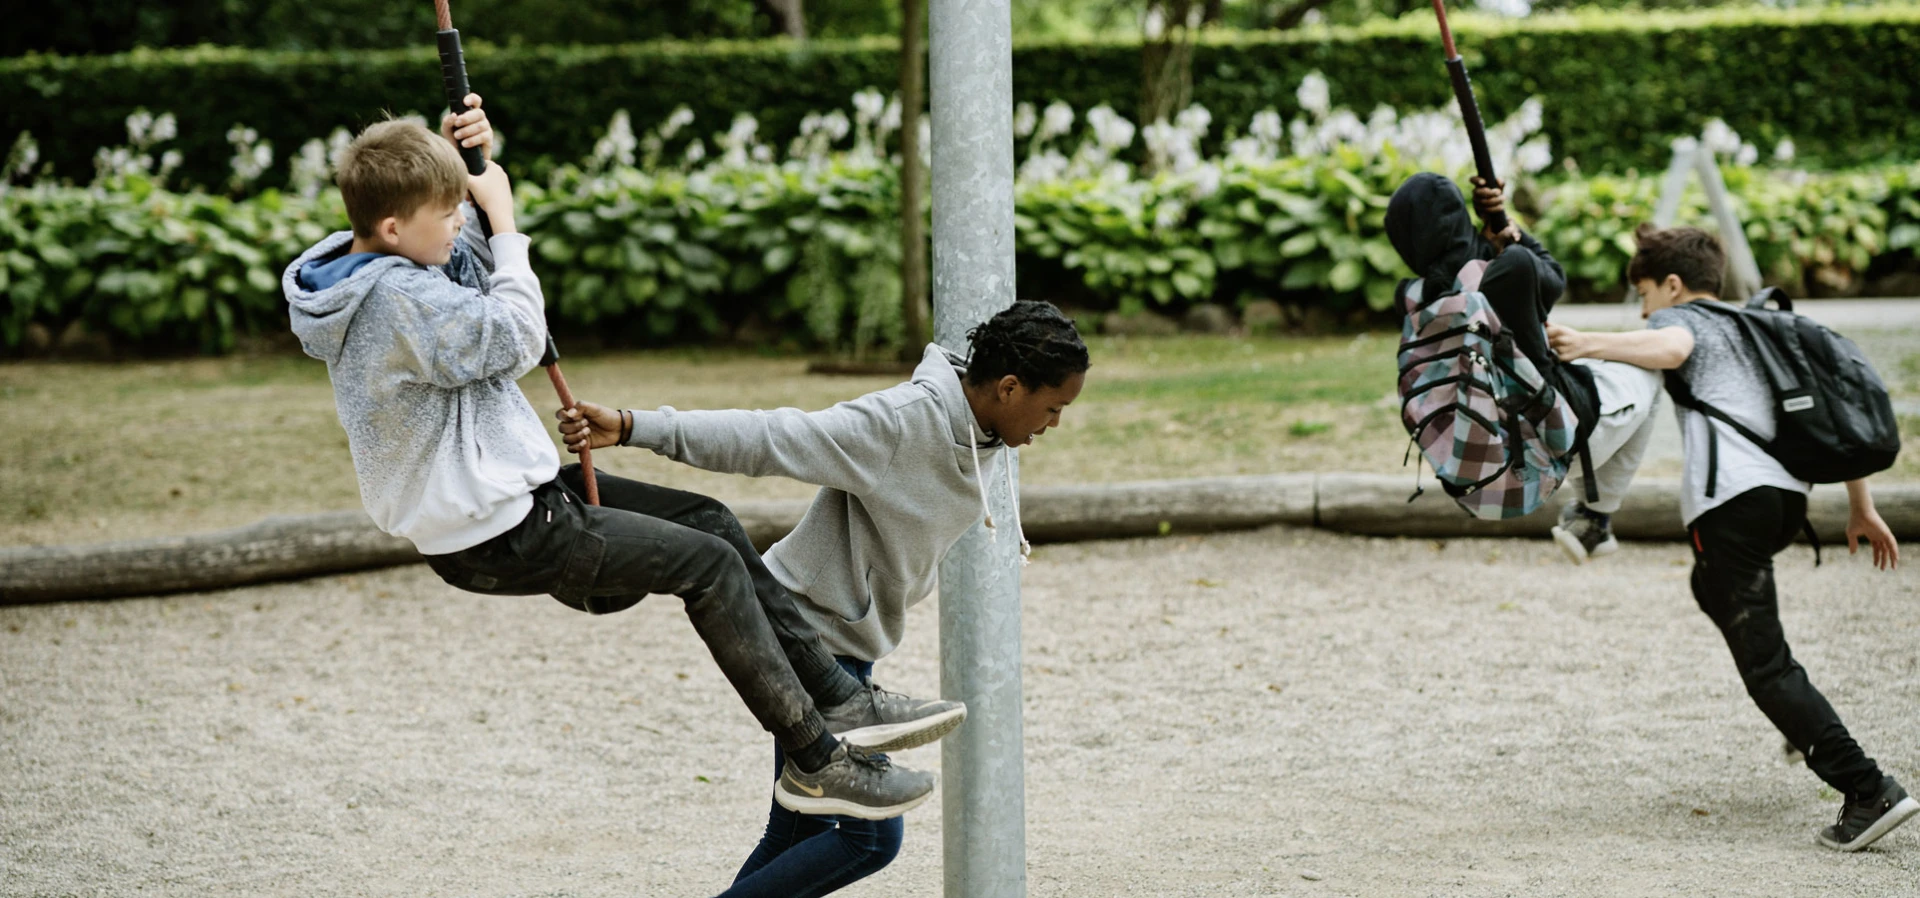 Adolescentes jugando en un parque infantil giratorio